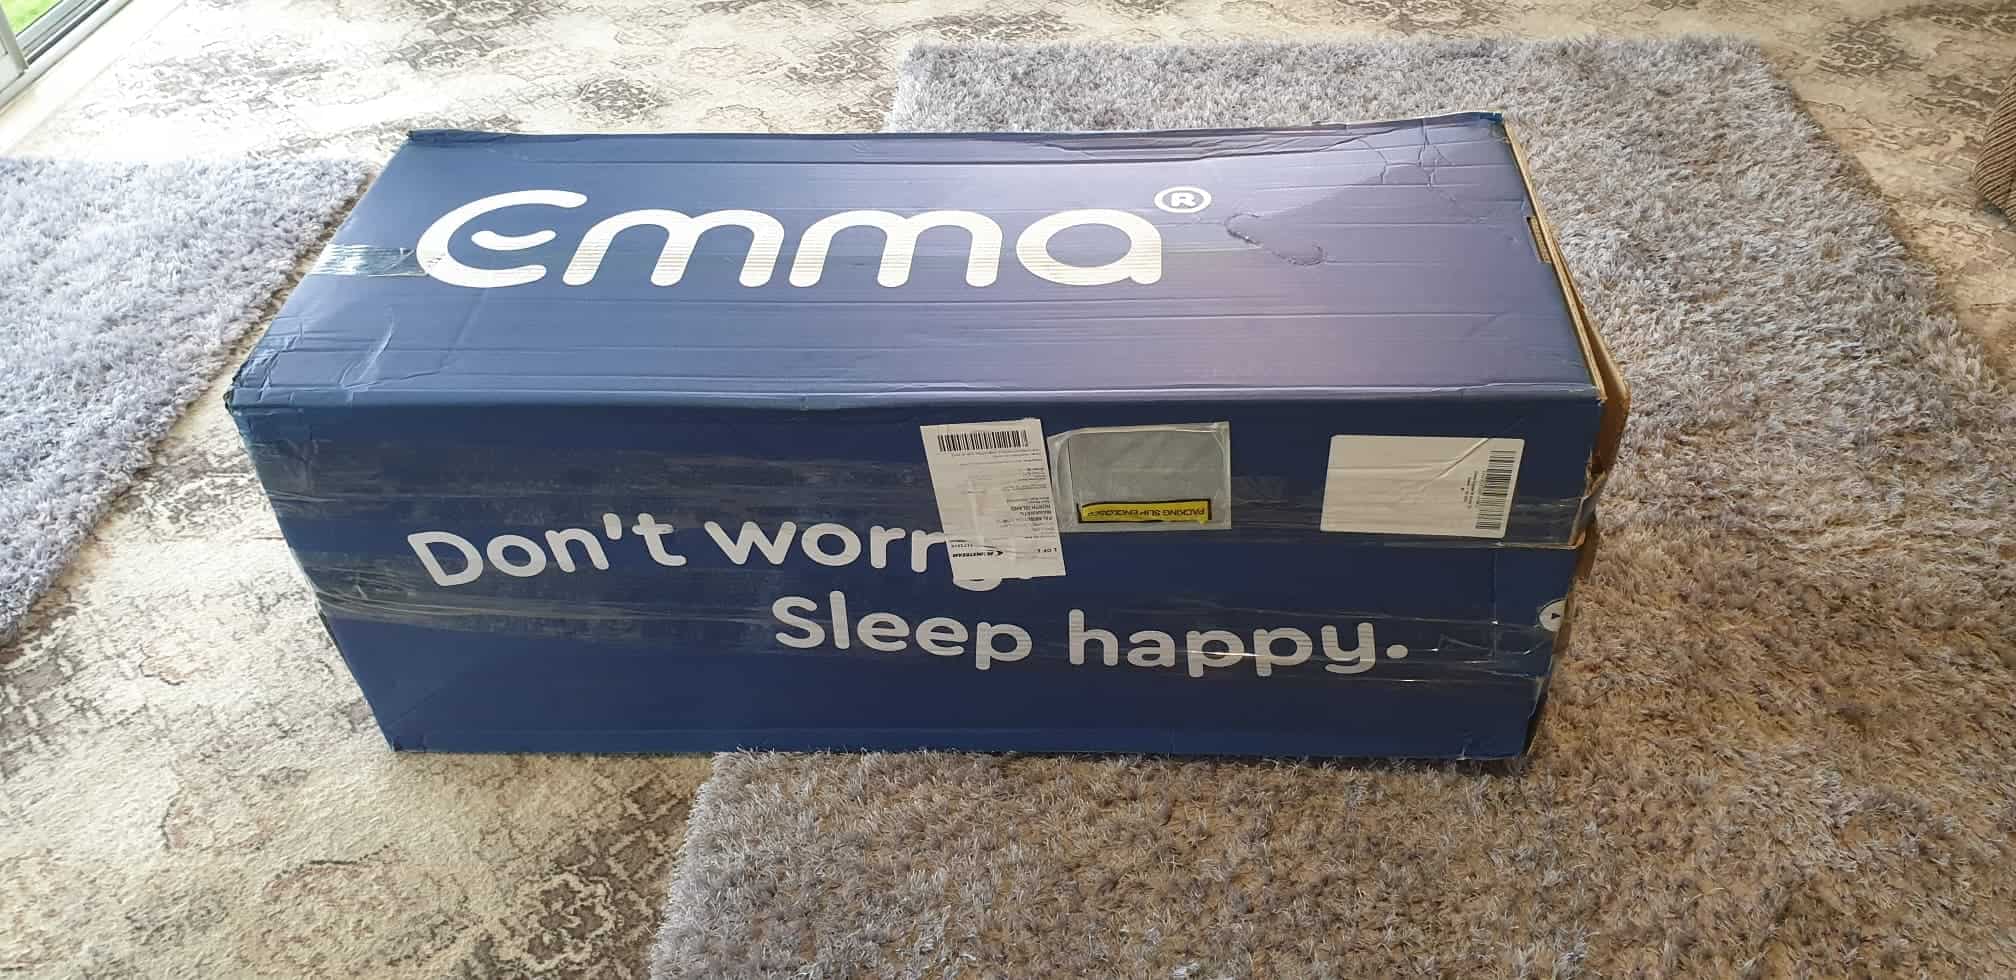 emma mattress in a box